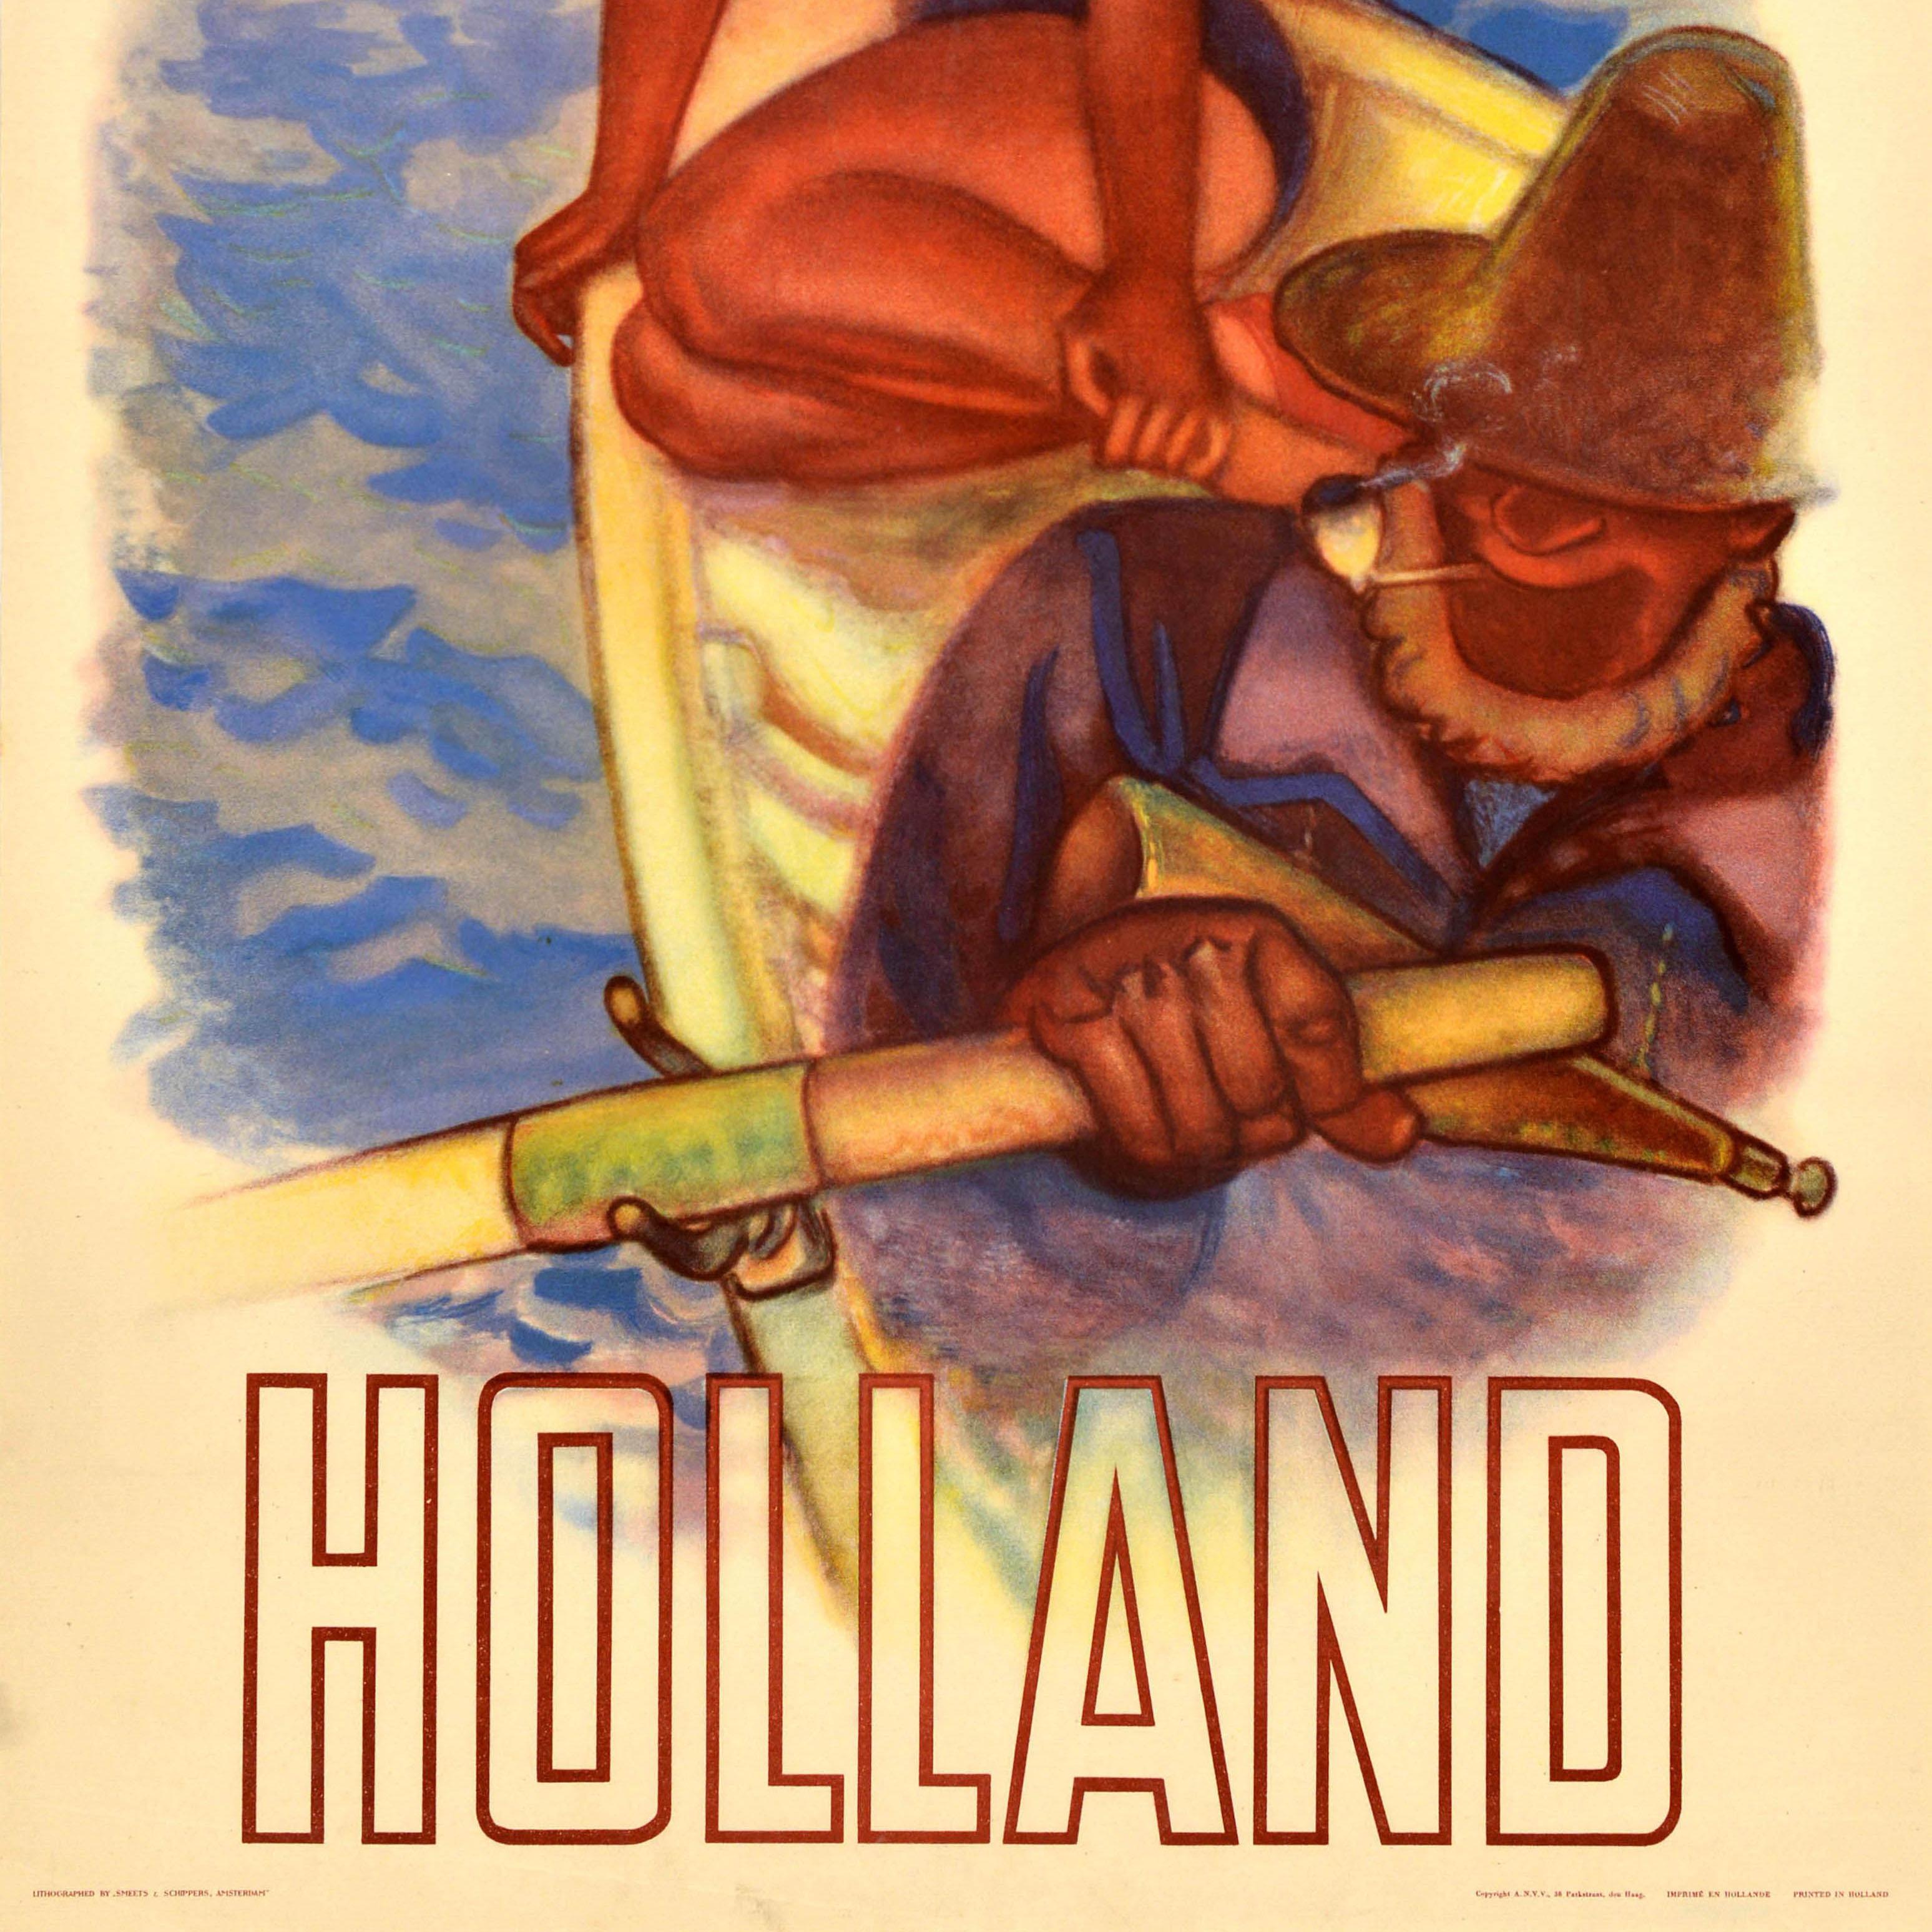 Originales Vintage-Reiseplakat für Holland mit einer Dame im Bikini, die auf einem hölzernen Ruderboot sitzt, das von einem Pfeife rauchenden Seemann oder Fischer gerudert wird, vor Menschen am Strand im Hintergrund. Lithographiert von Smeets &